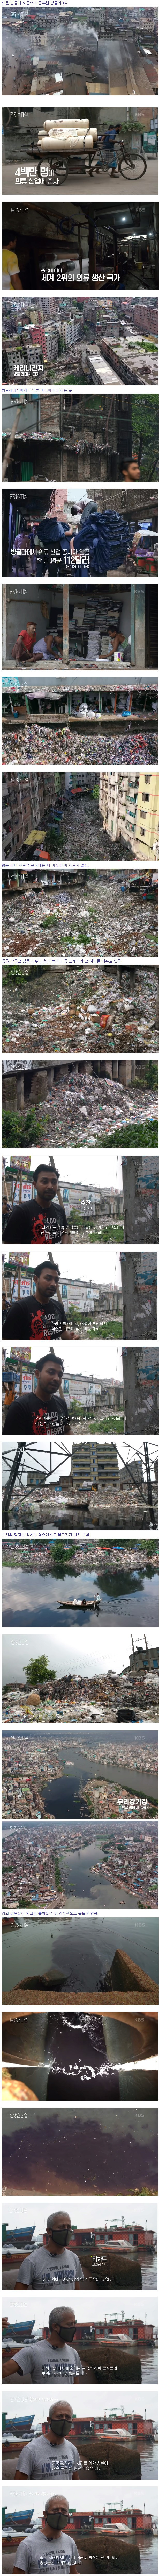 썸네일-의류 공장으로 더럽혀진 방글라데시-이미지